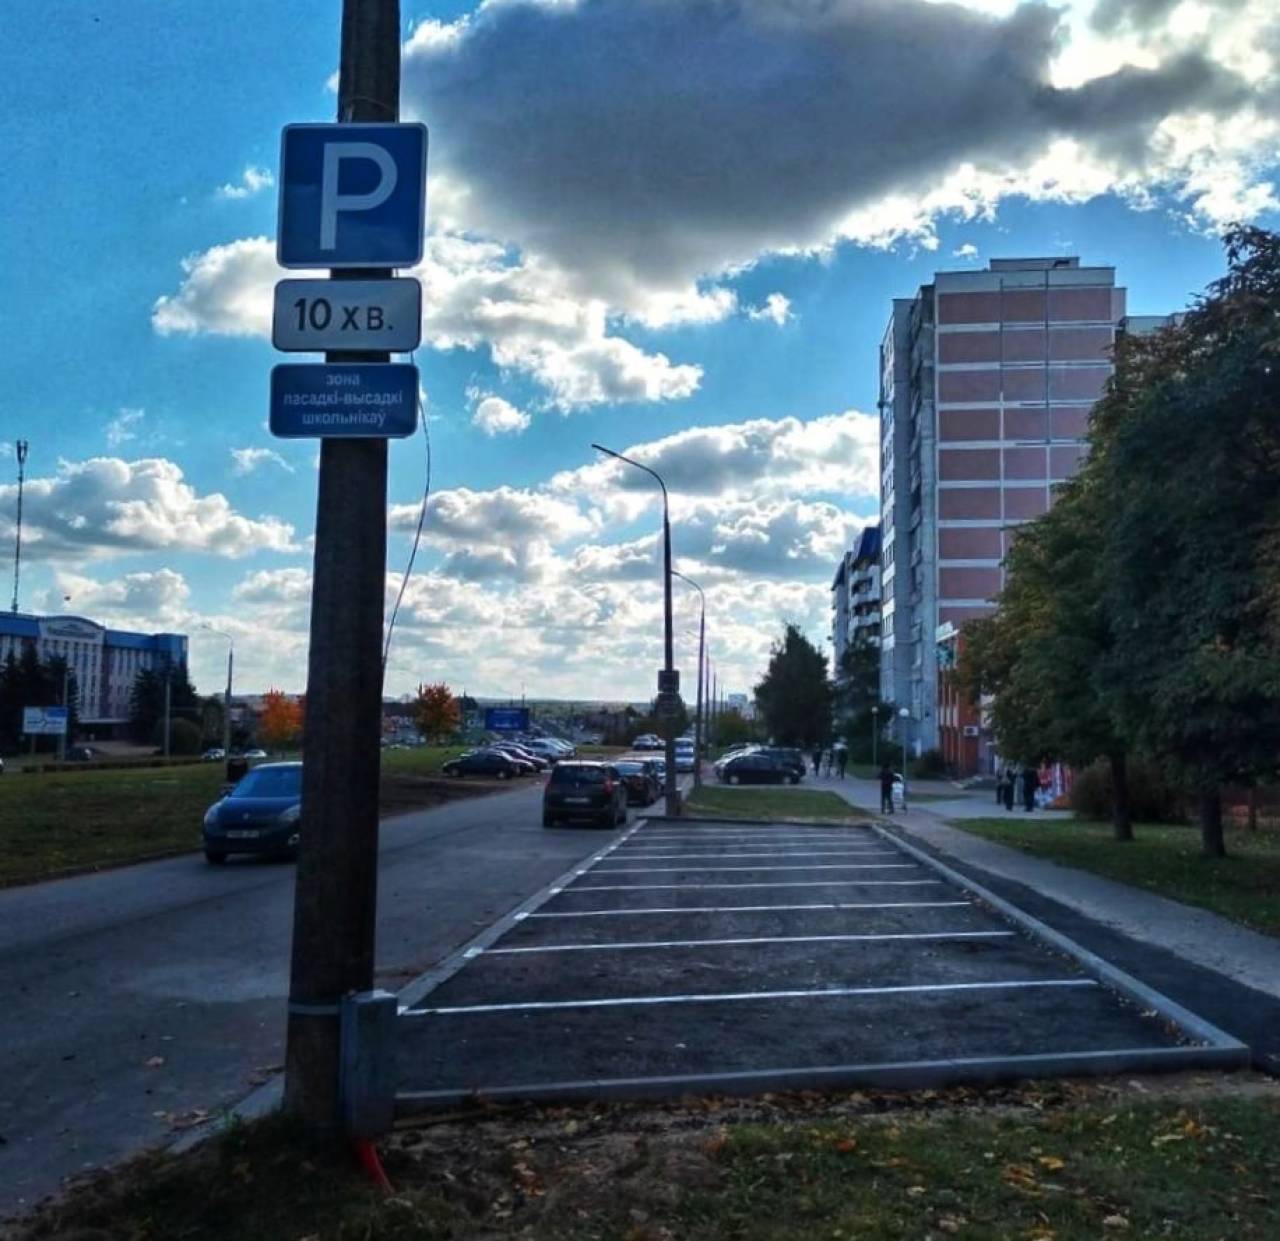 В Гродно появилась еще одна парковка, время стоянки на которой ограничено всего 10-ю минутами